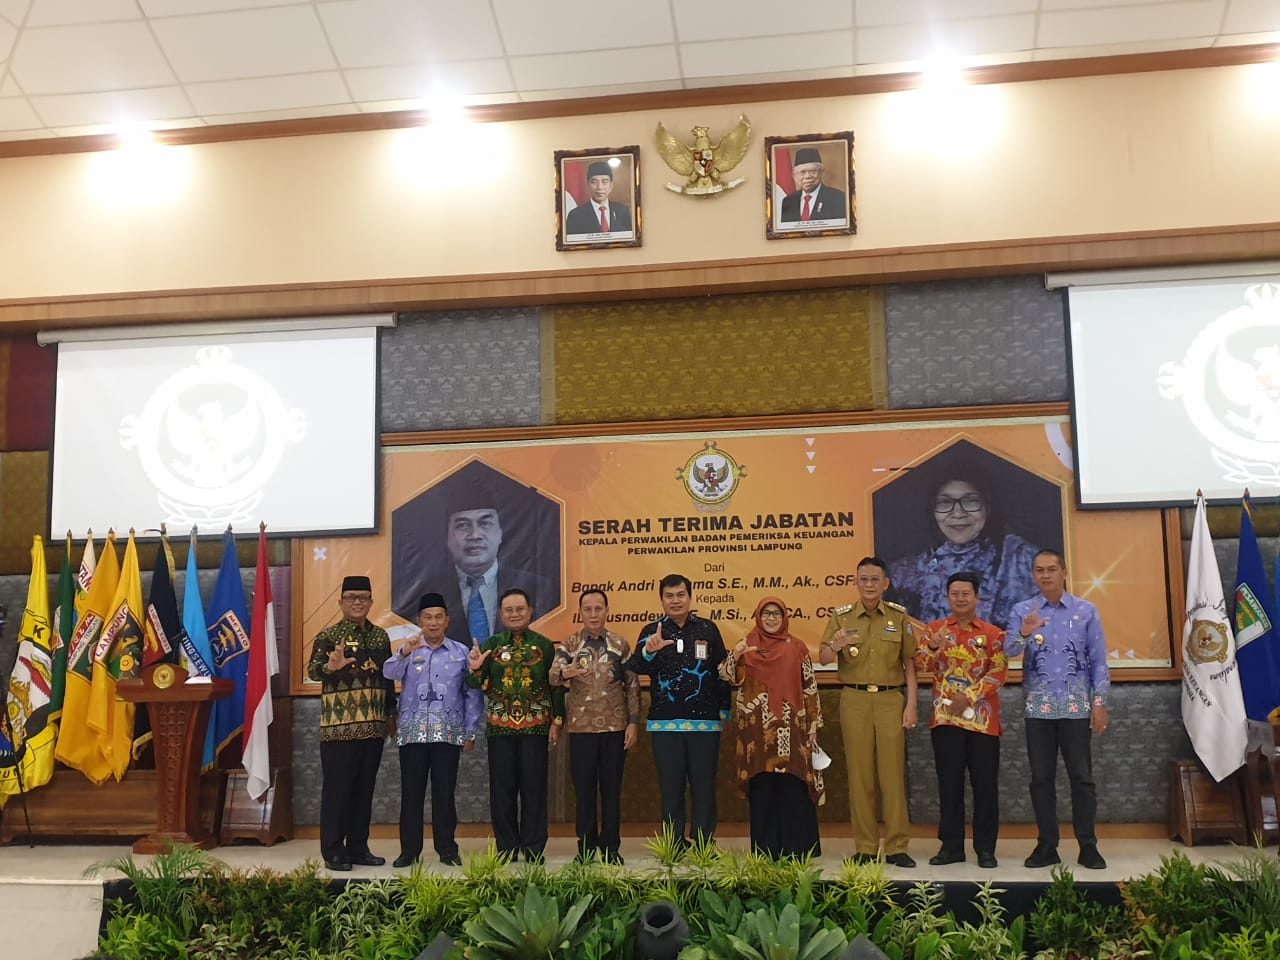 Wabup-Ketua DPRD Lambar Hadiri Sertijab Kepala Perwakilan BPK Provinsi Lampung